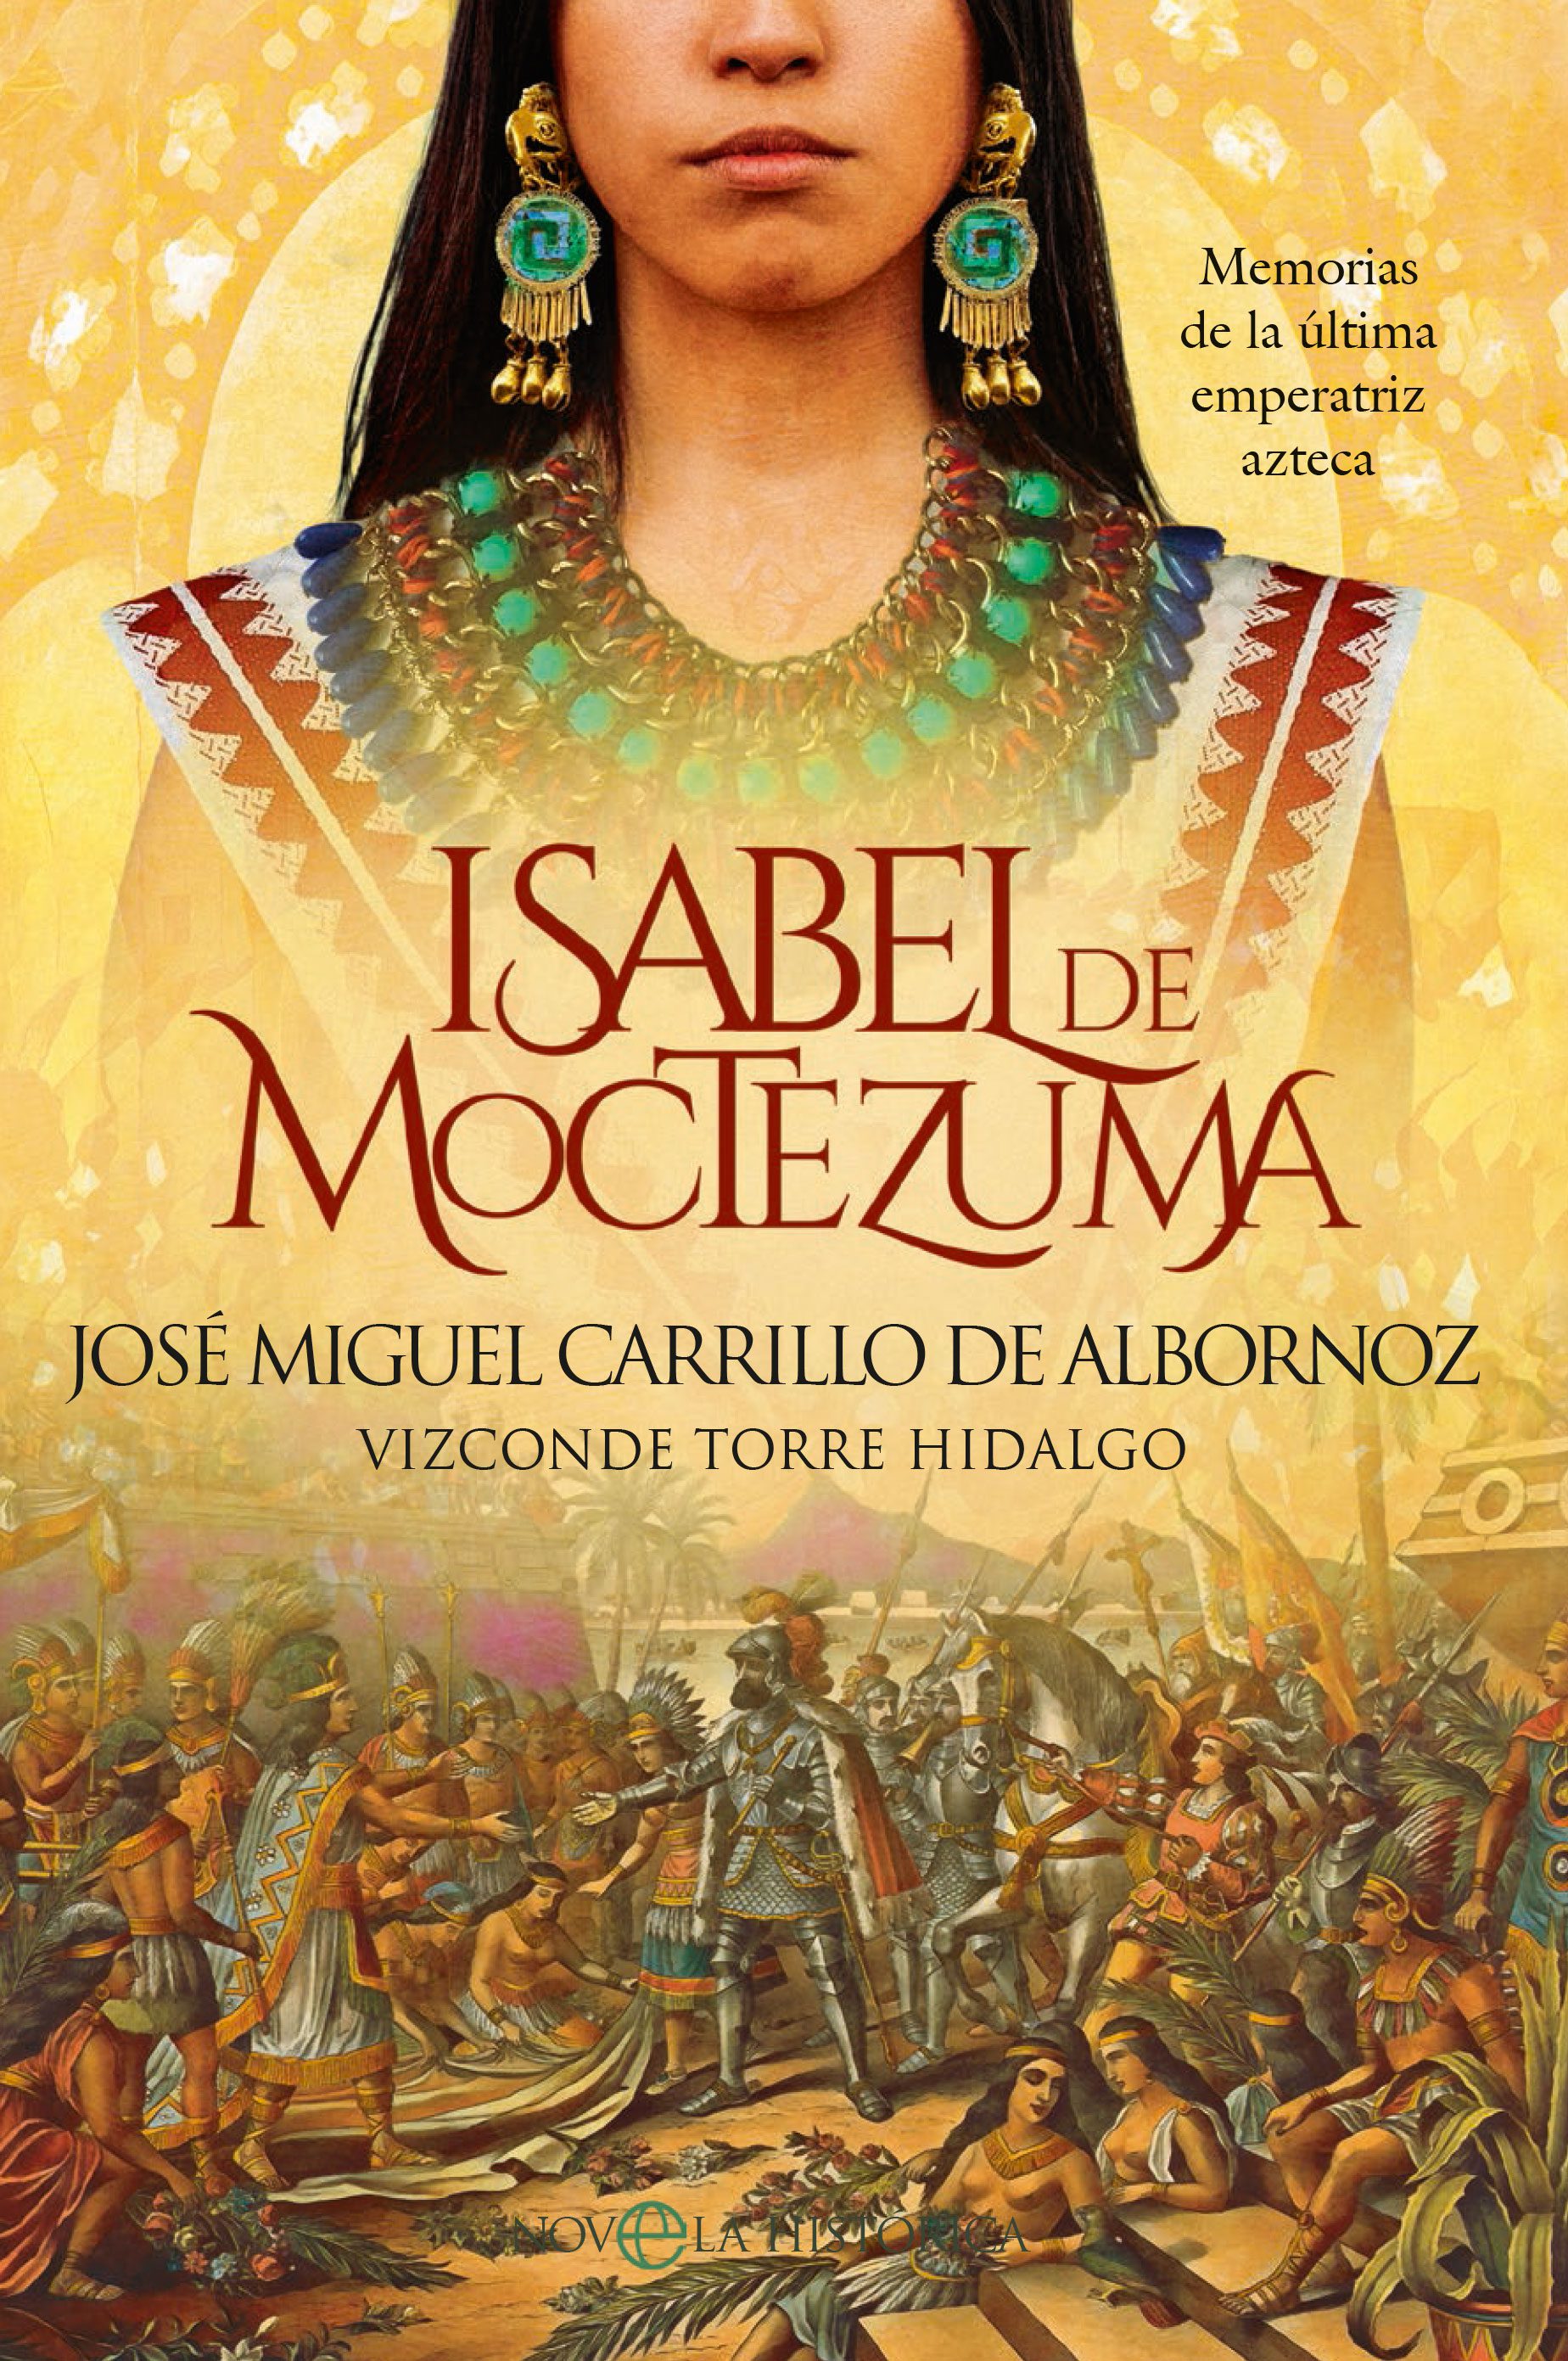 Presentación del libro Isabel de Moctezuma, la última emperatriz azteca